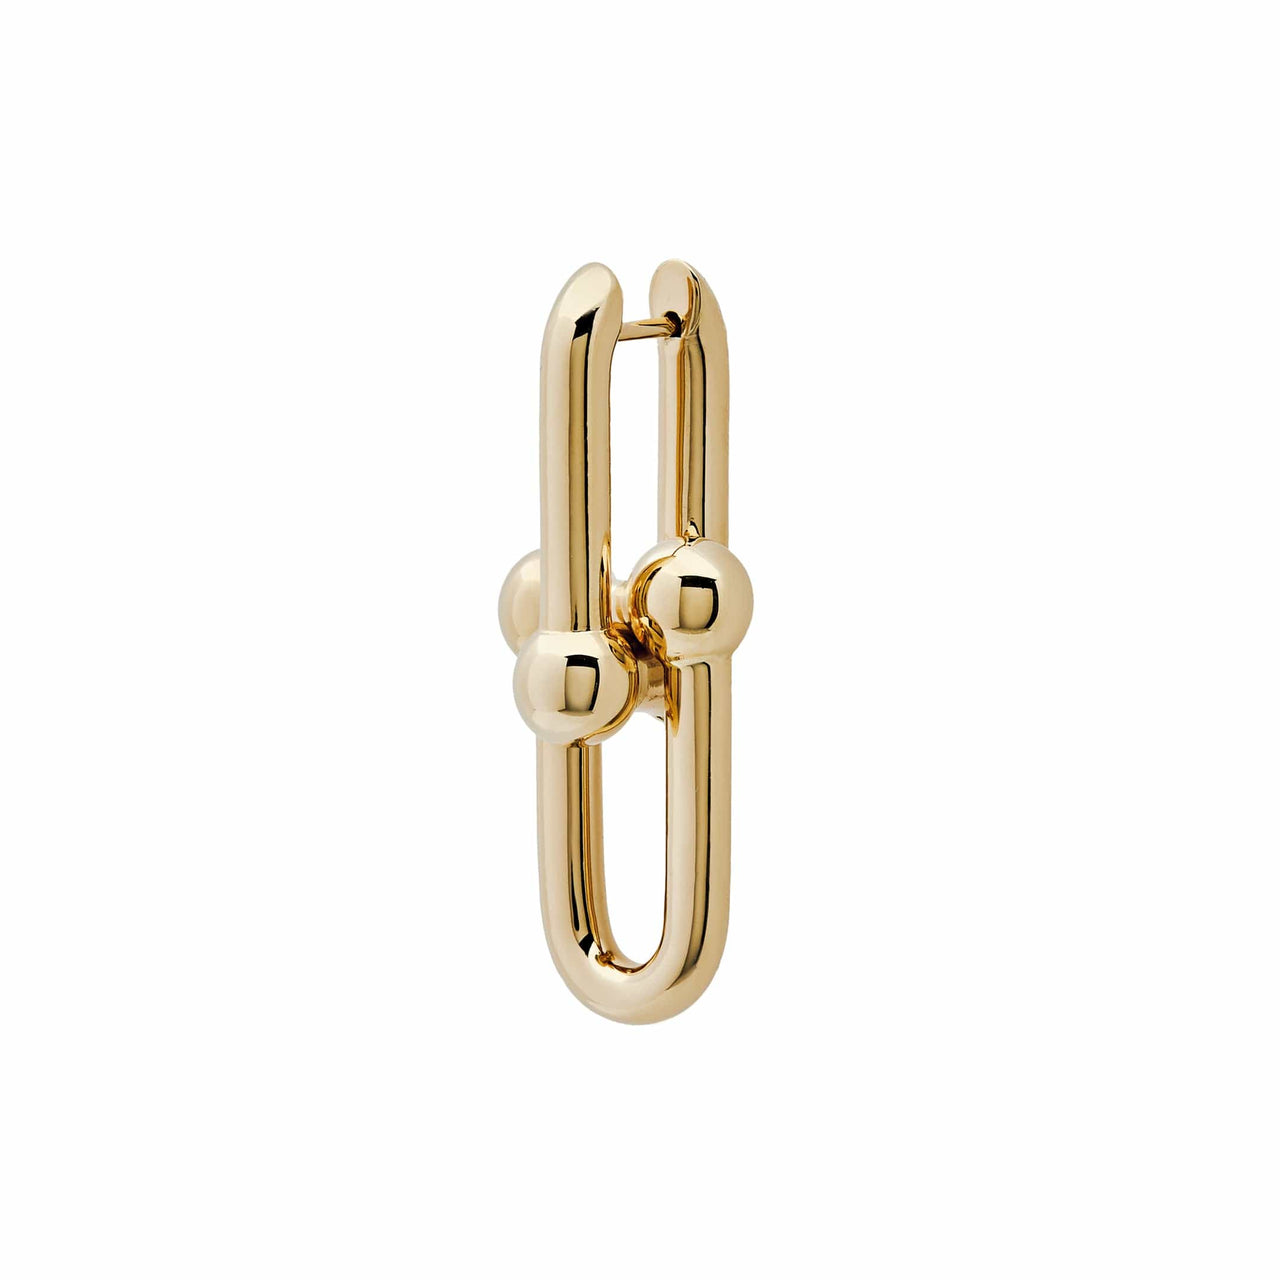 Tiffany & Co. HardWear Large Link Earrings in Yellow Gold 68533651